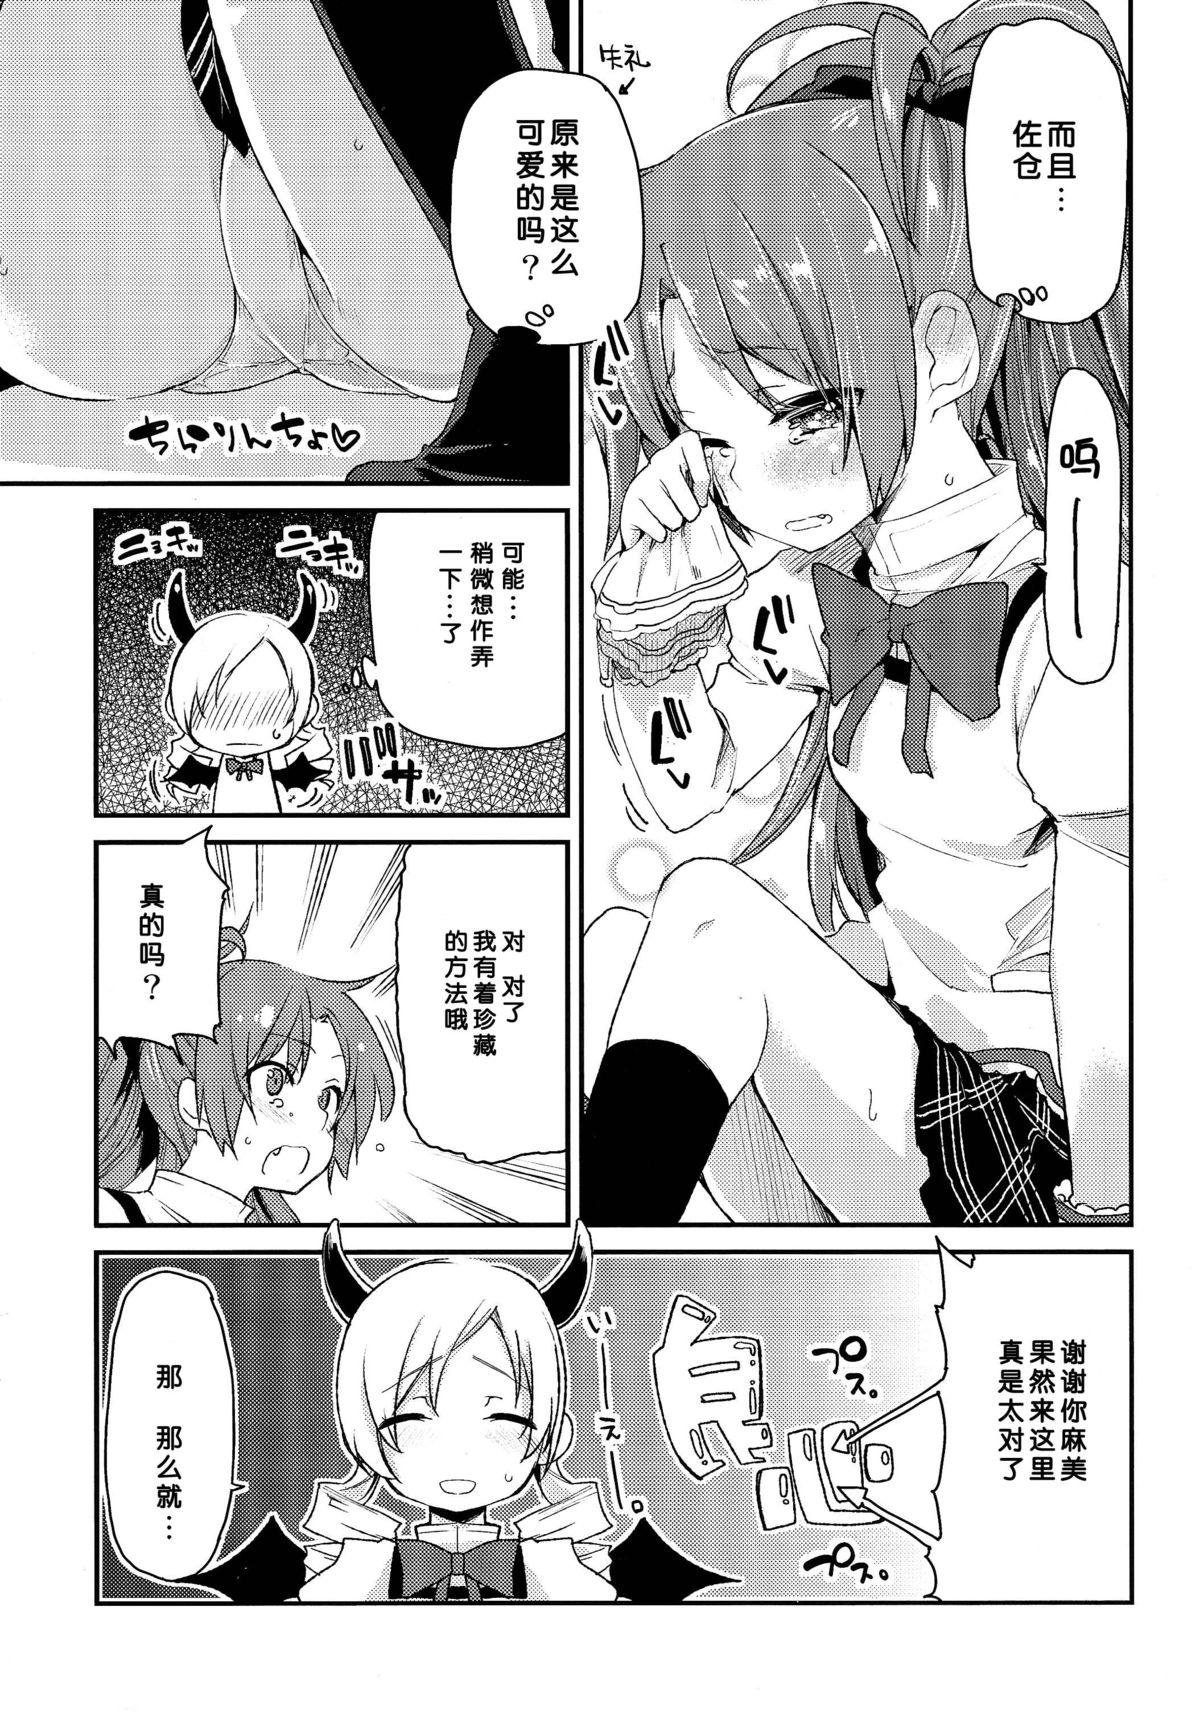 Parties Sakura-san ga Tottemo Kawaii kara - Puella magi madoka magica Pussy Play - Page 9